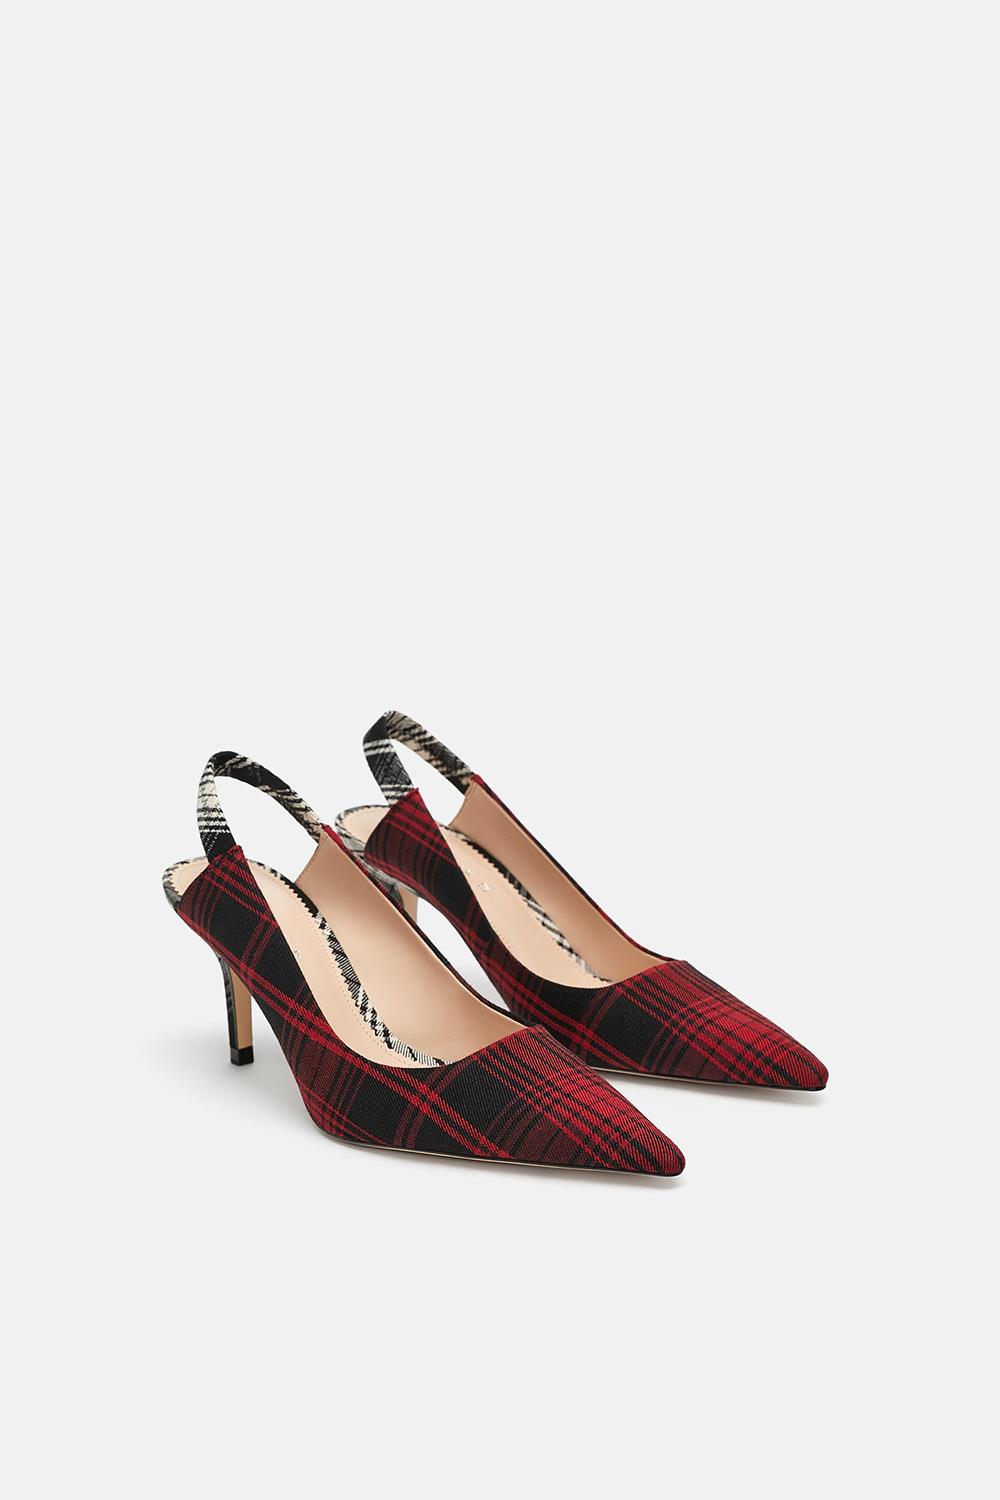 Estos zapatos de fiesta mujer de Zara son lo que buscando